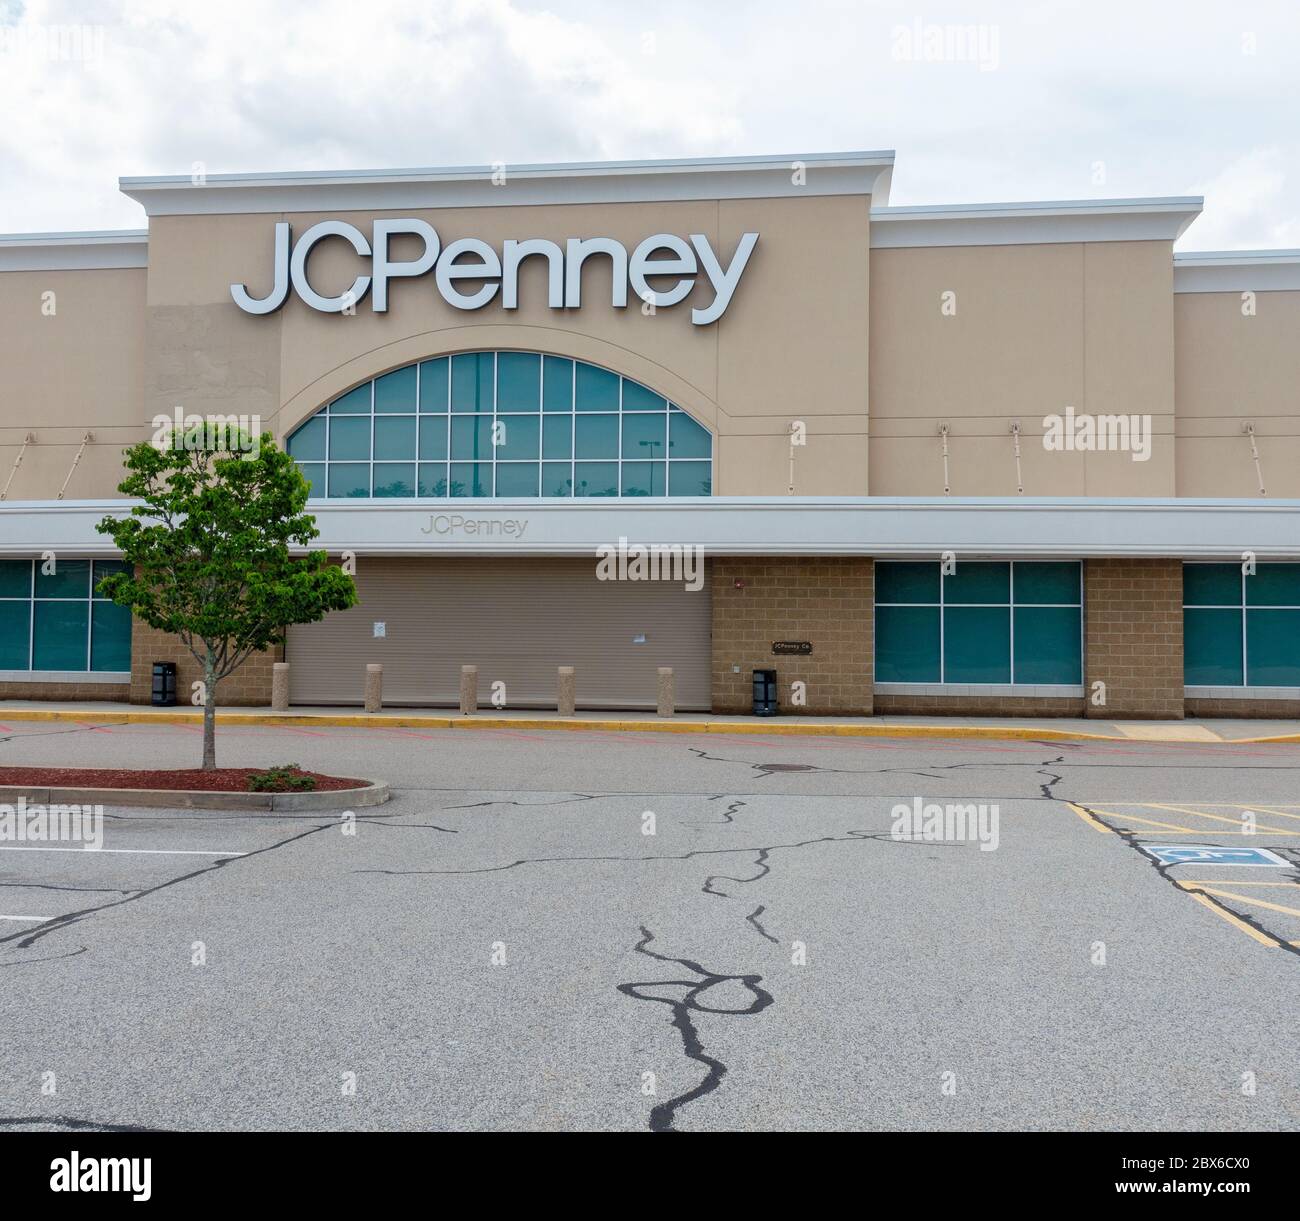 Un J C Penney, chaîne de grands magasins, extérieur, fermé pendant la pandémie Covid-19, à Wareham, Massachusetts, États-Unis, a nécessité des fermetures de magasins Banque D'Images